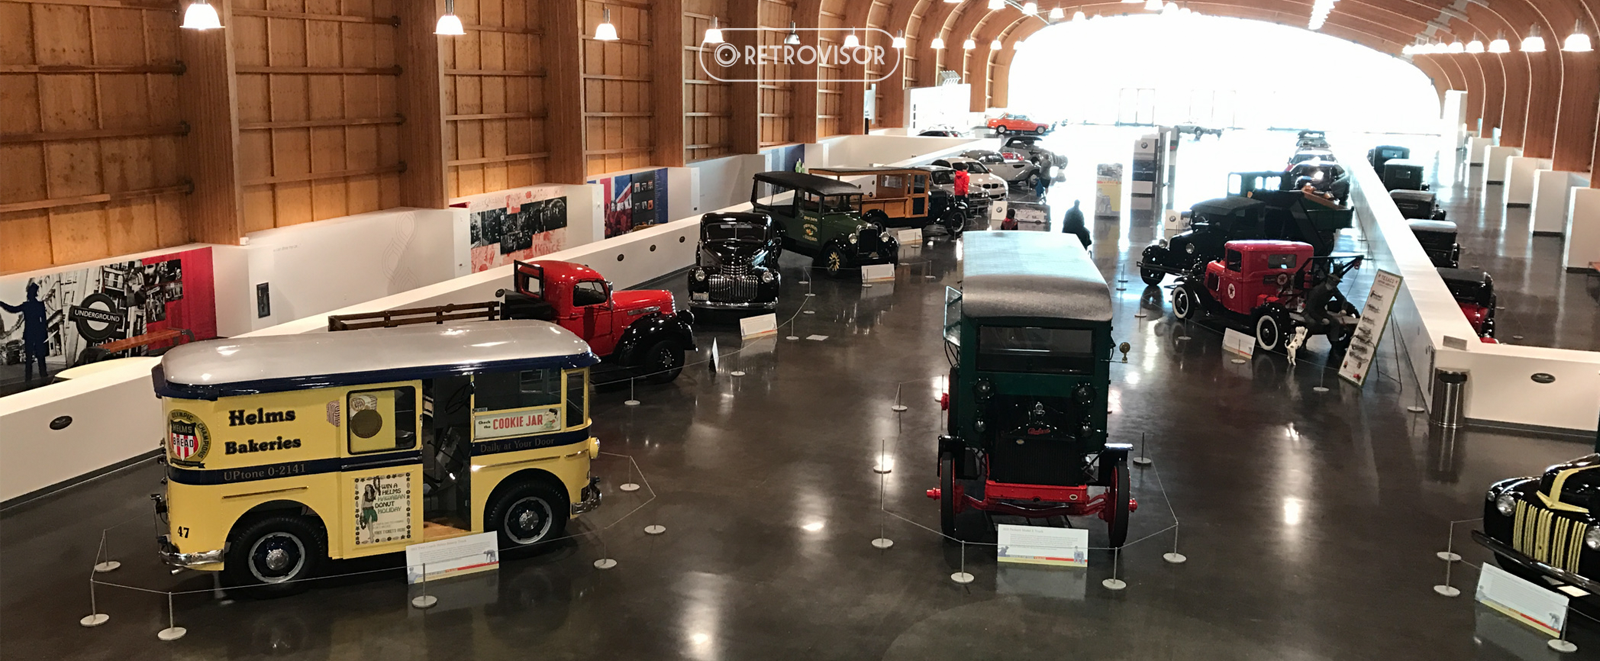 Visita ao LeMay – America’s Car Museum – mais de 300 fotos!